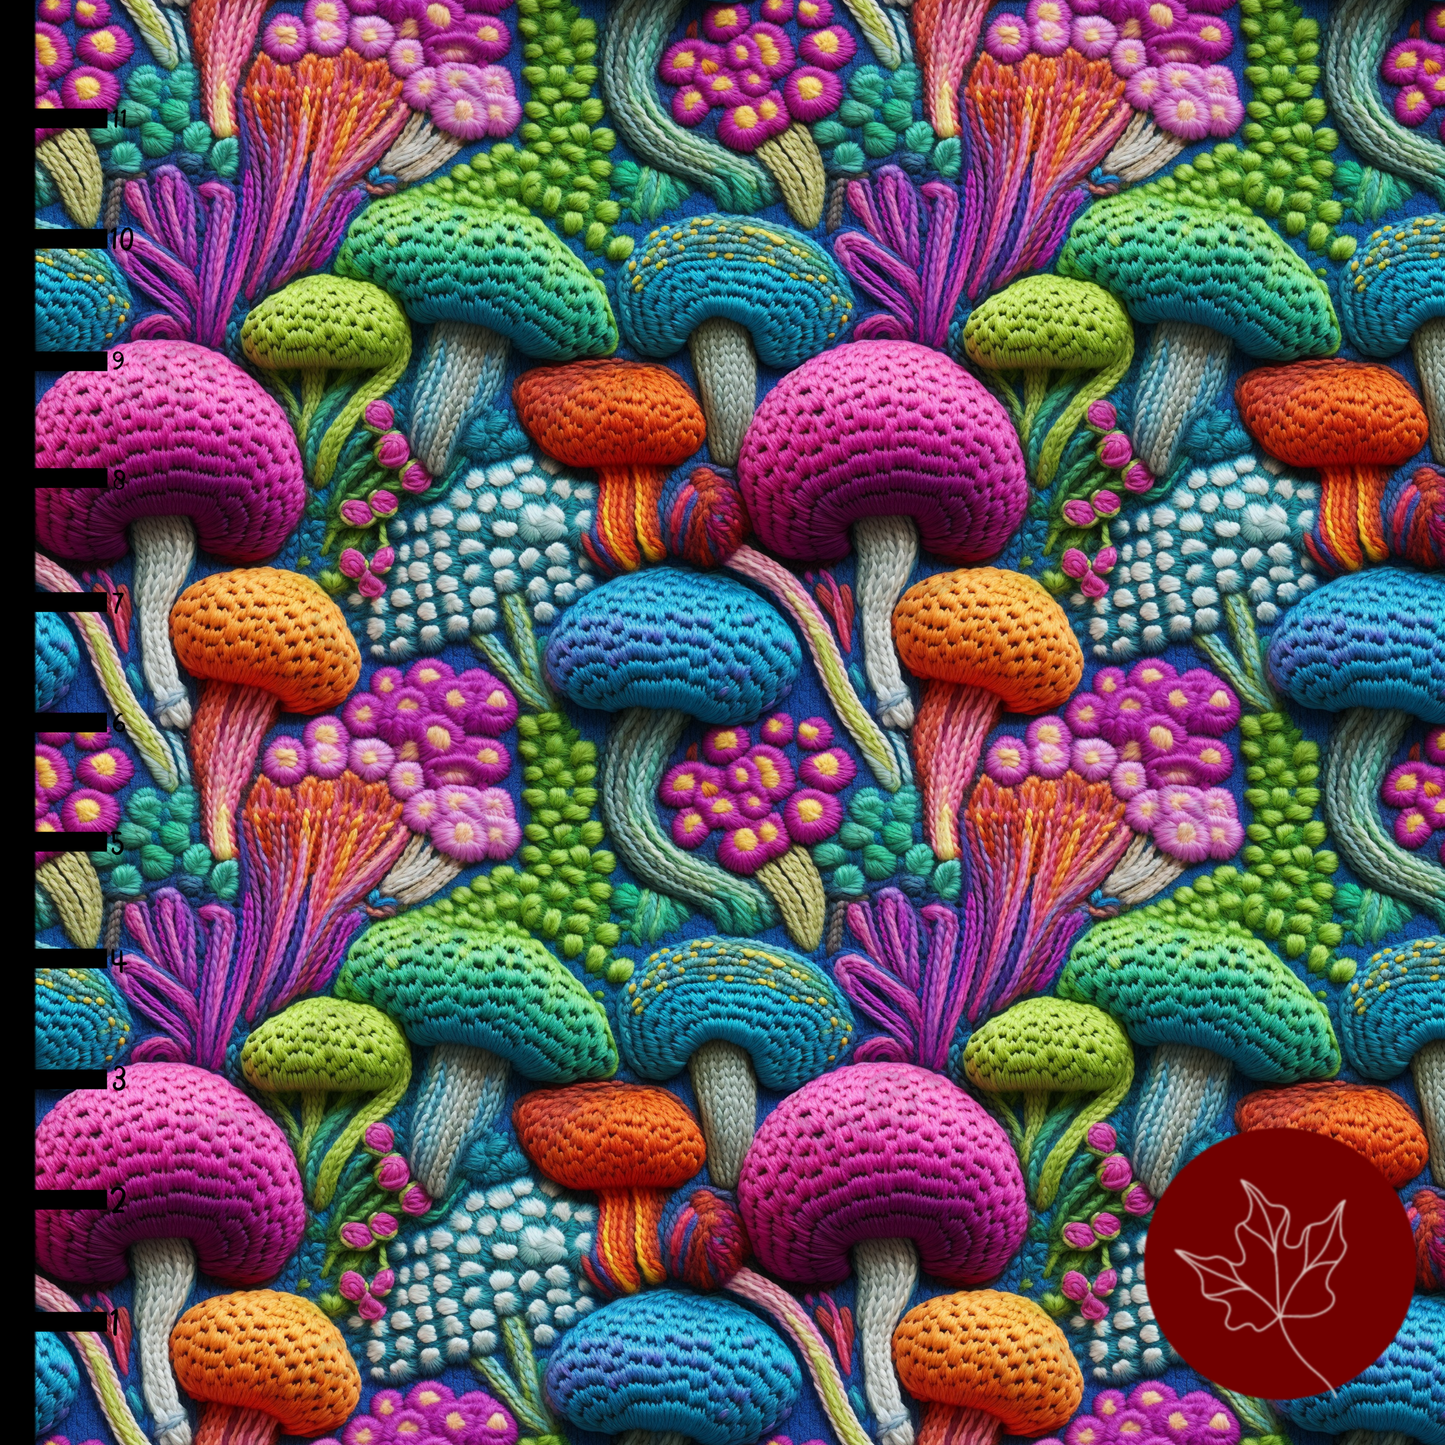 Mushroom Embroidery